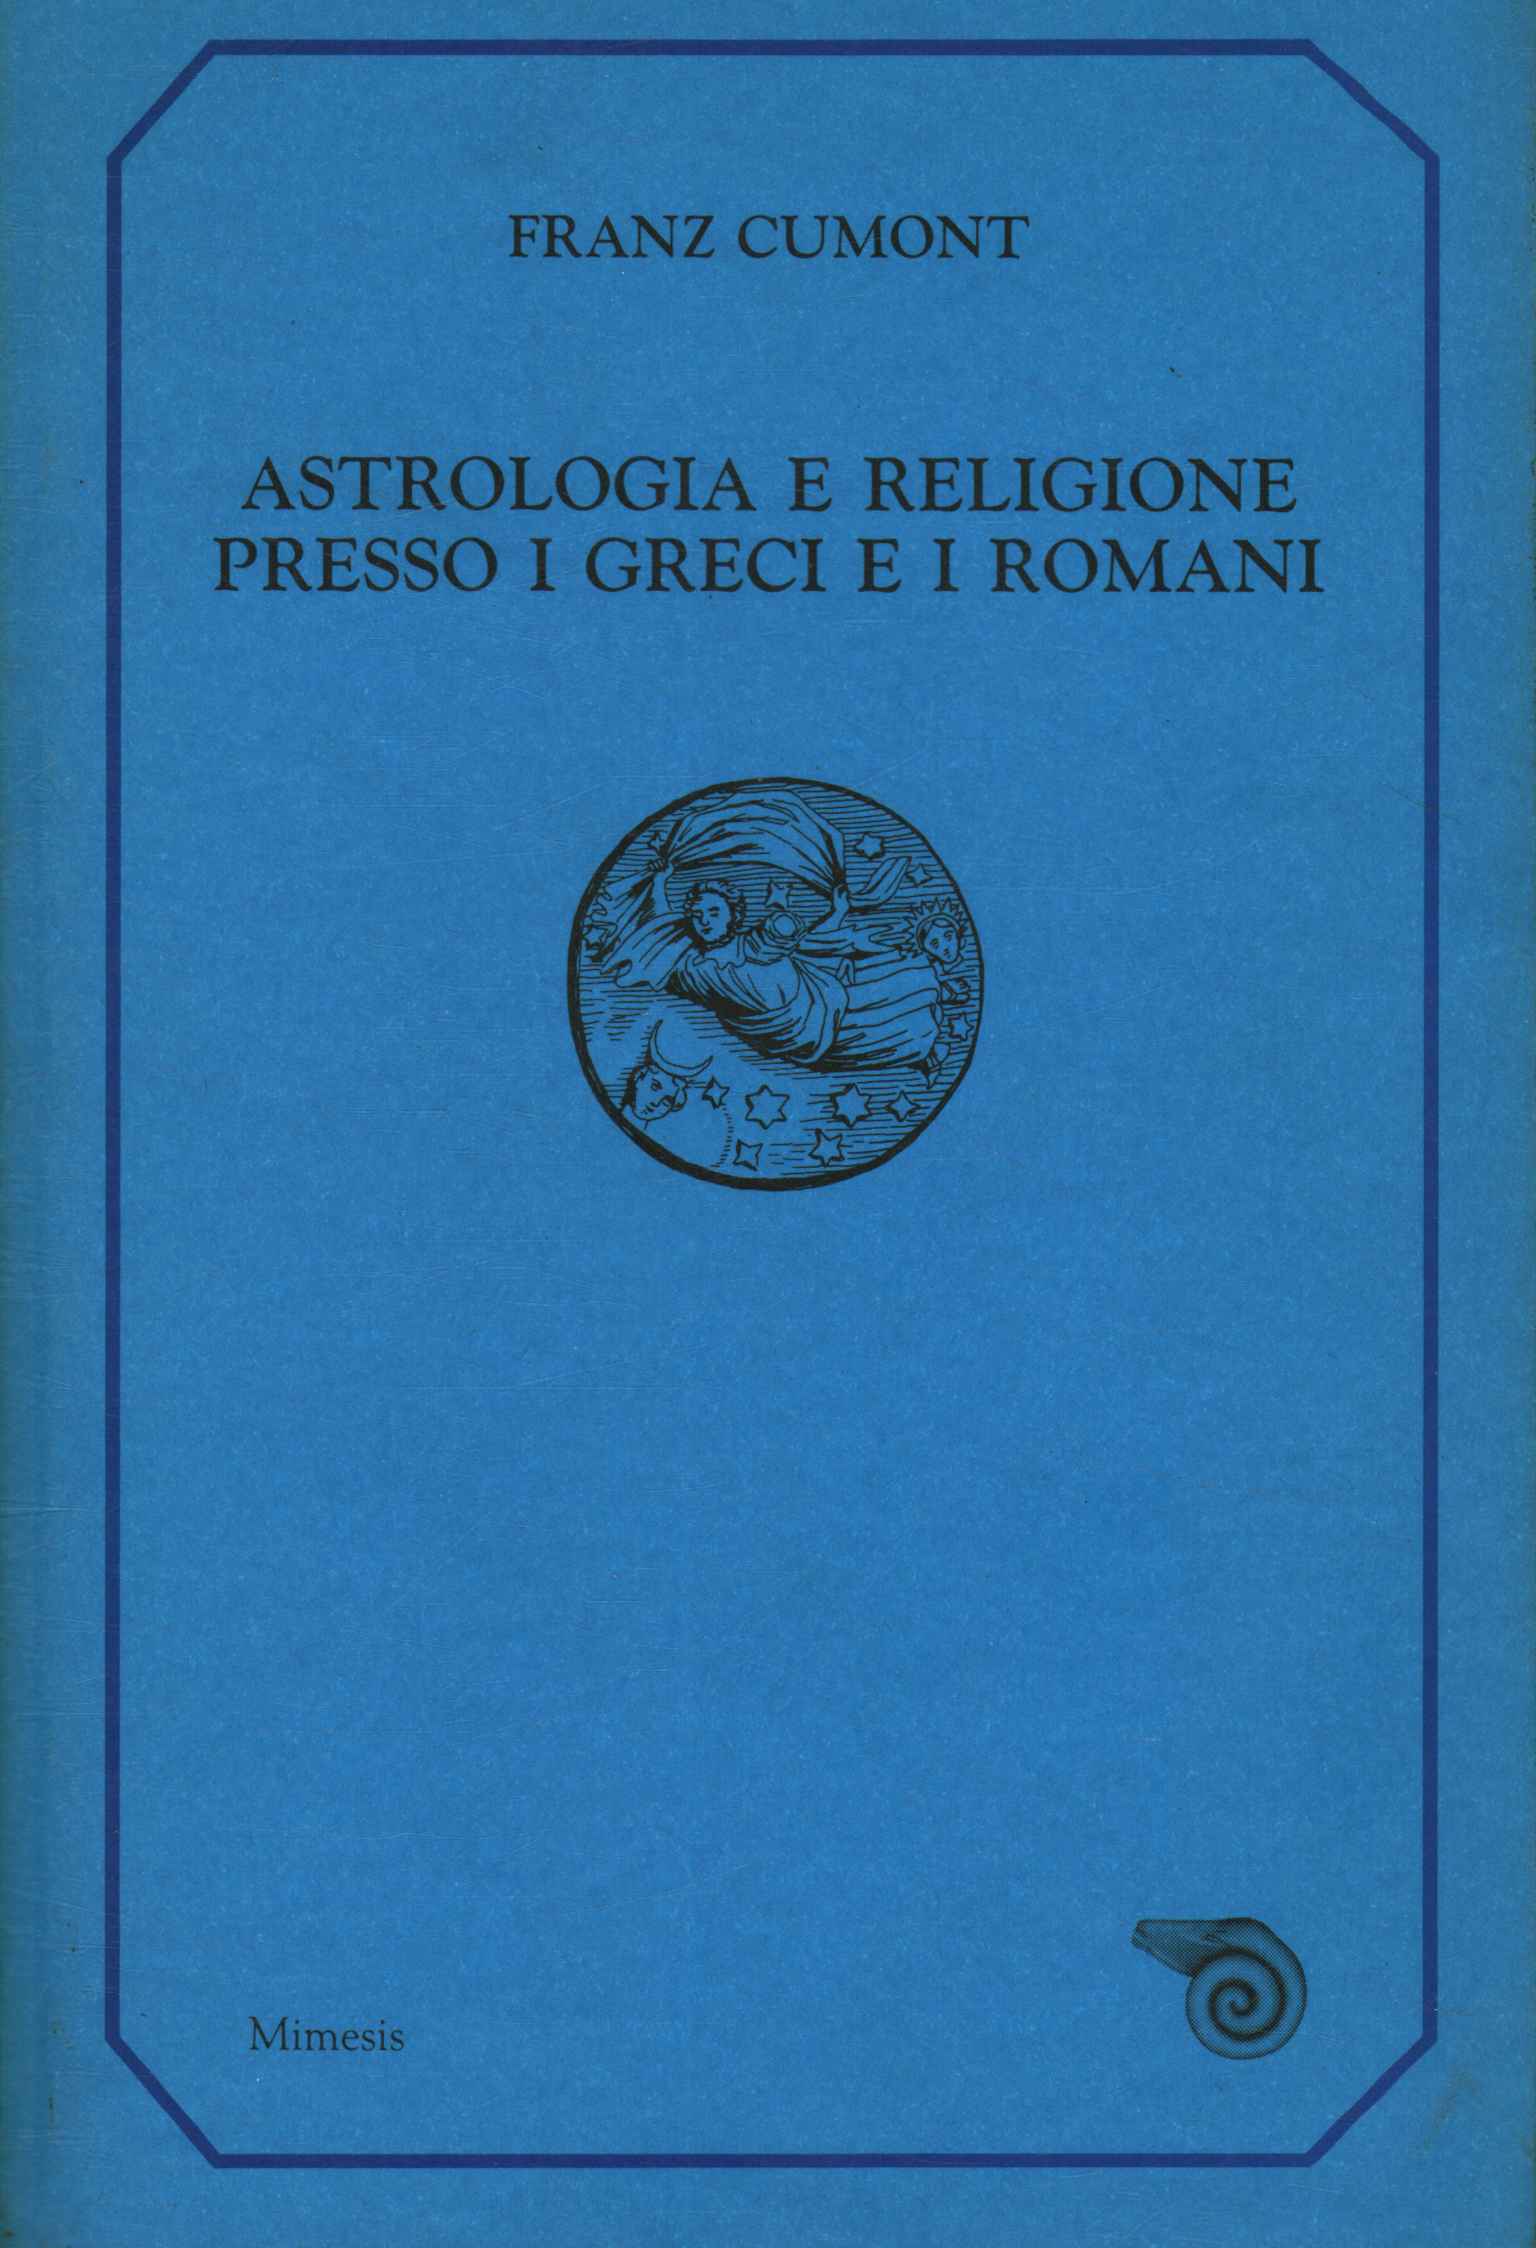 Astrologia e religione presso i greci